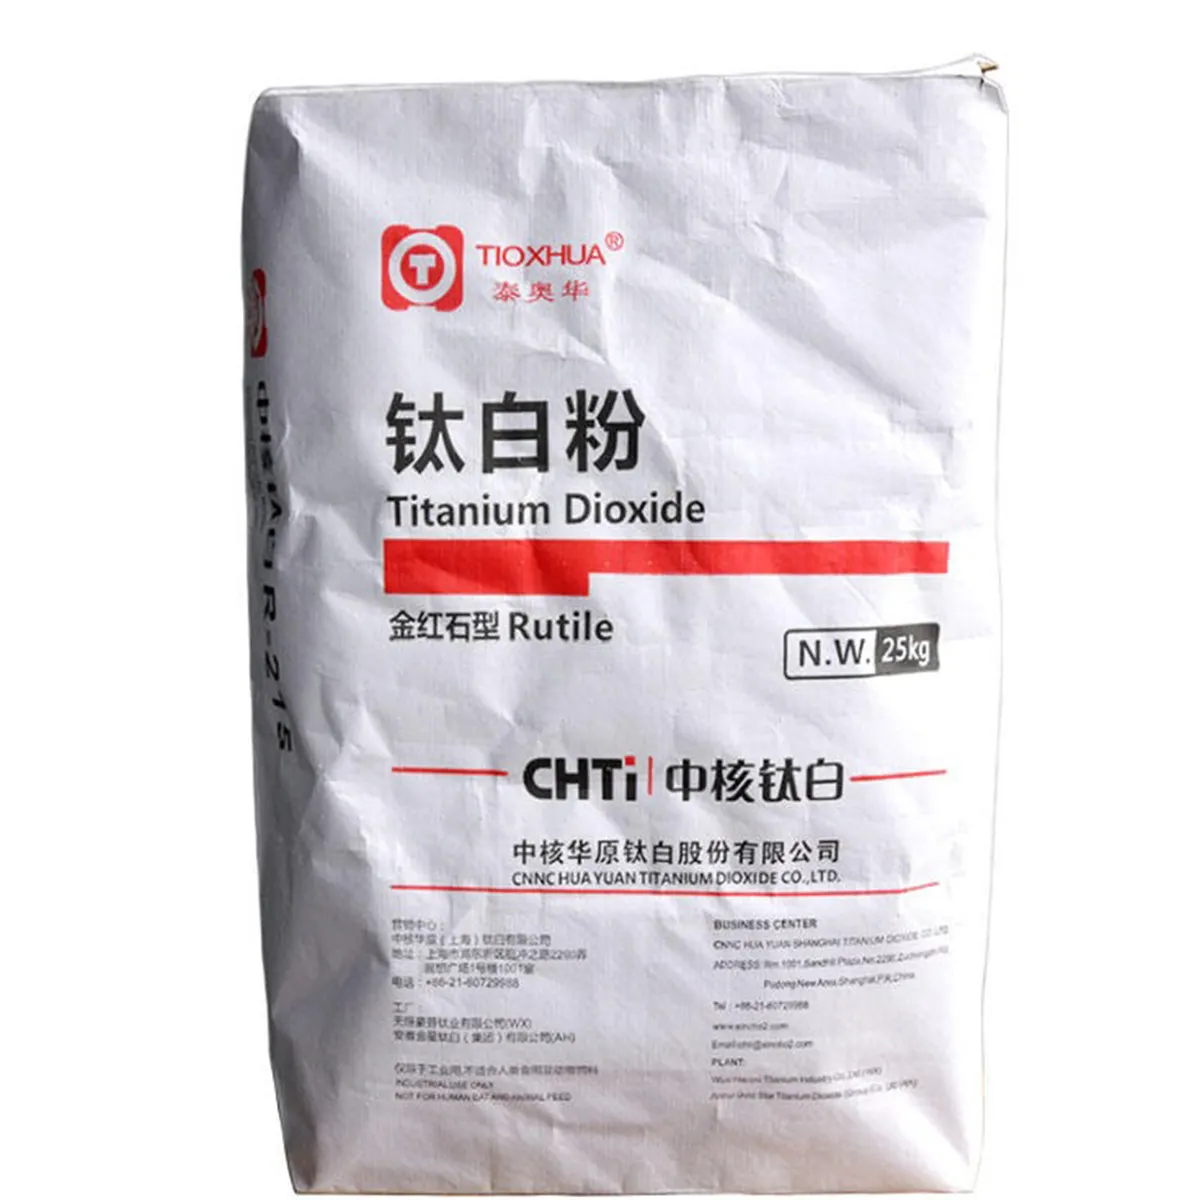 白色粉末価格二酸化チタンルチルR996は塗料やコーティングに使用されています